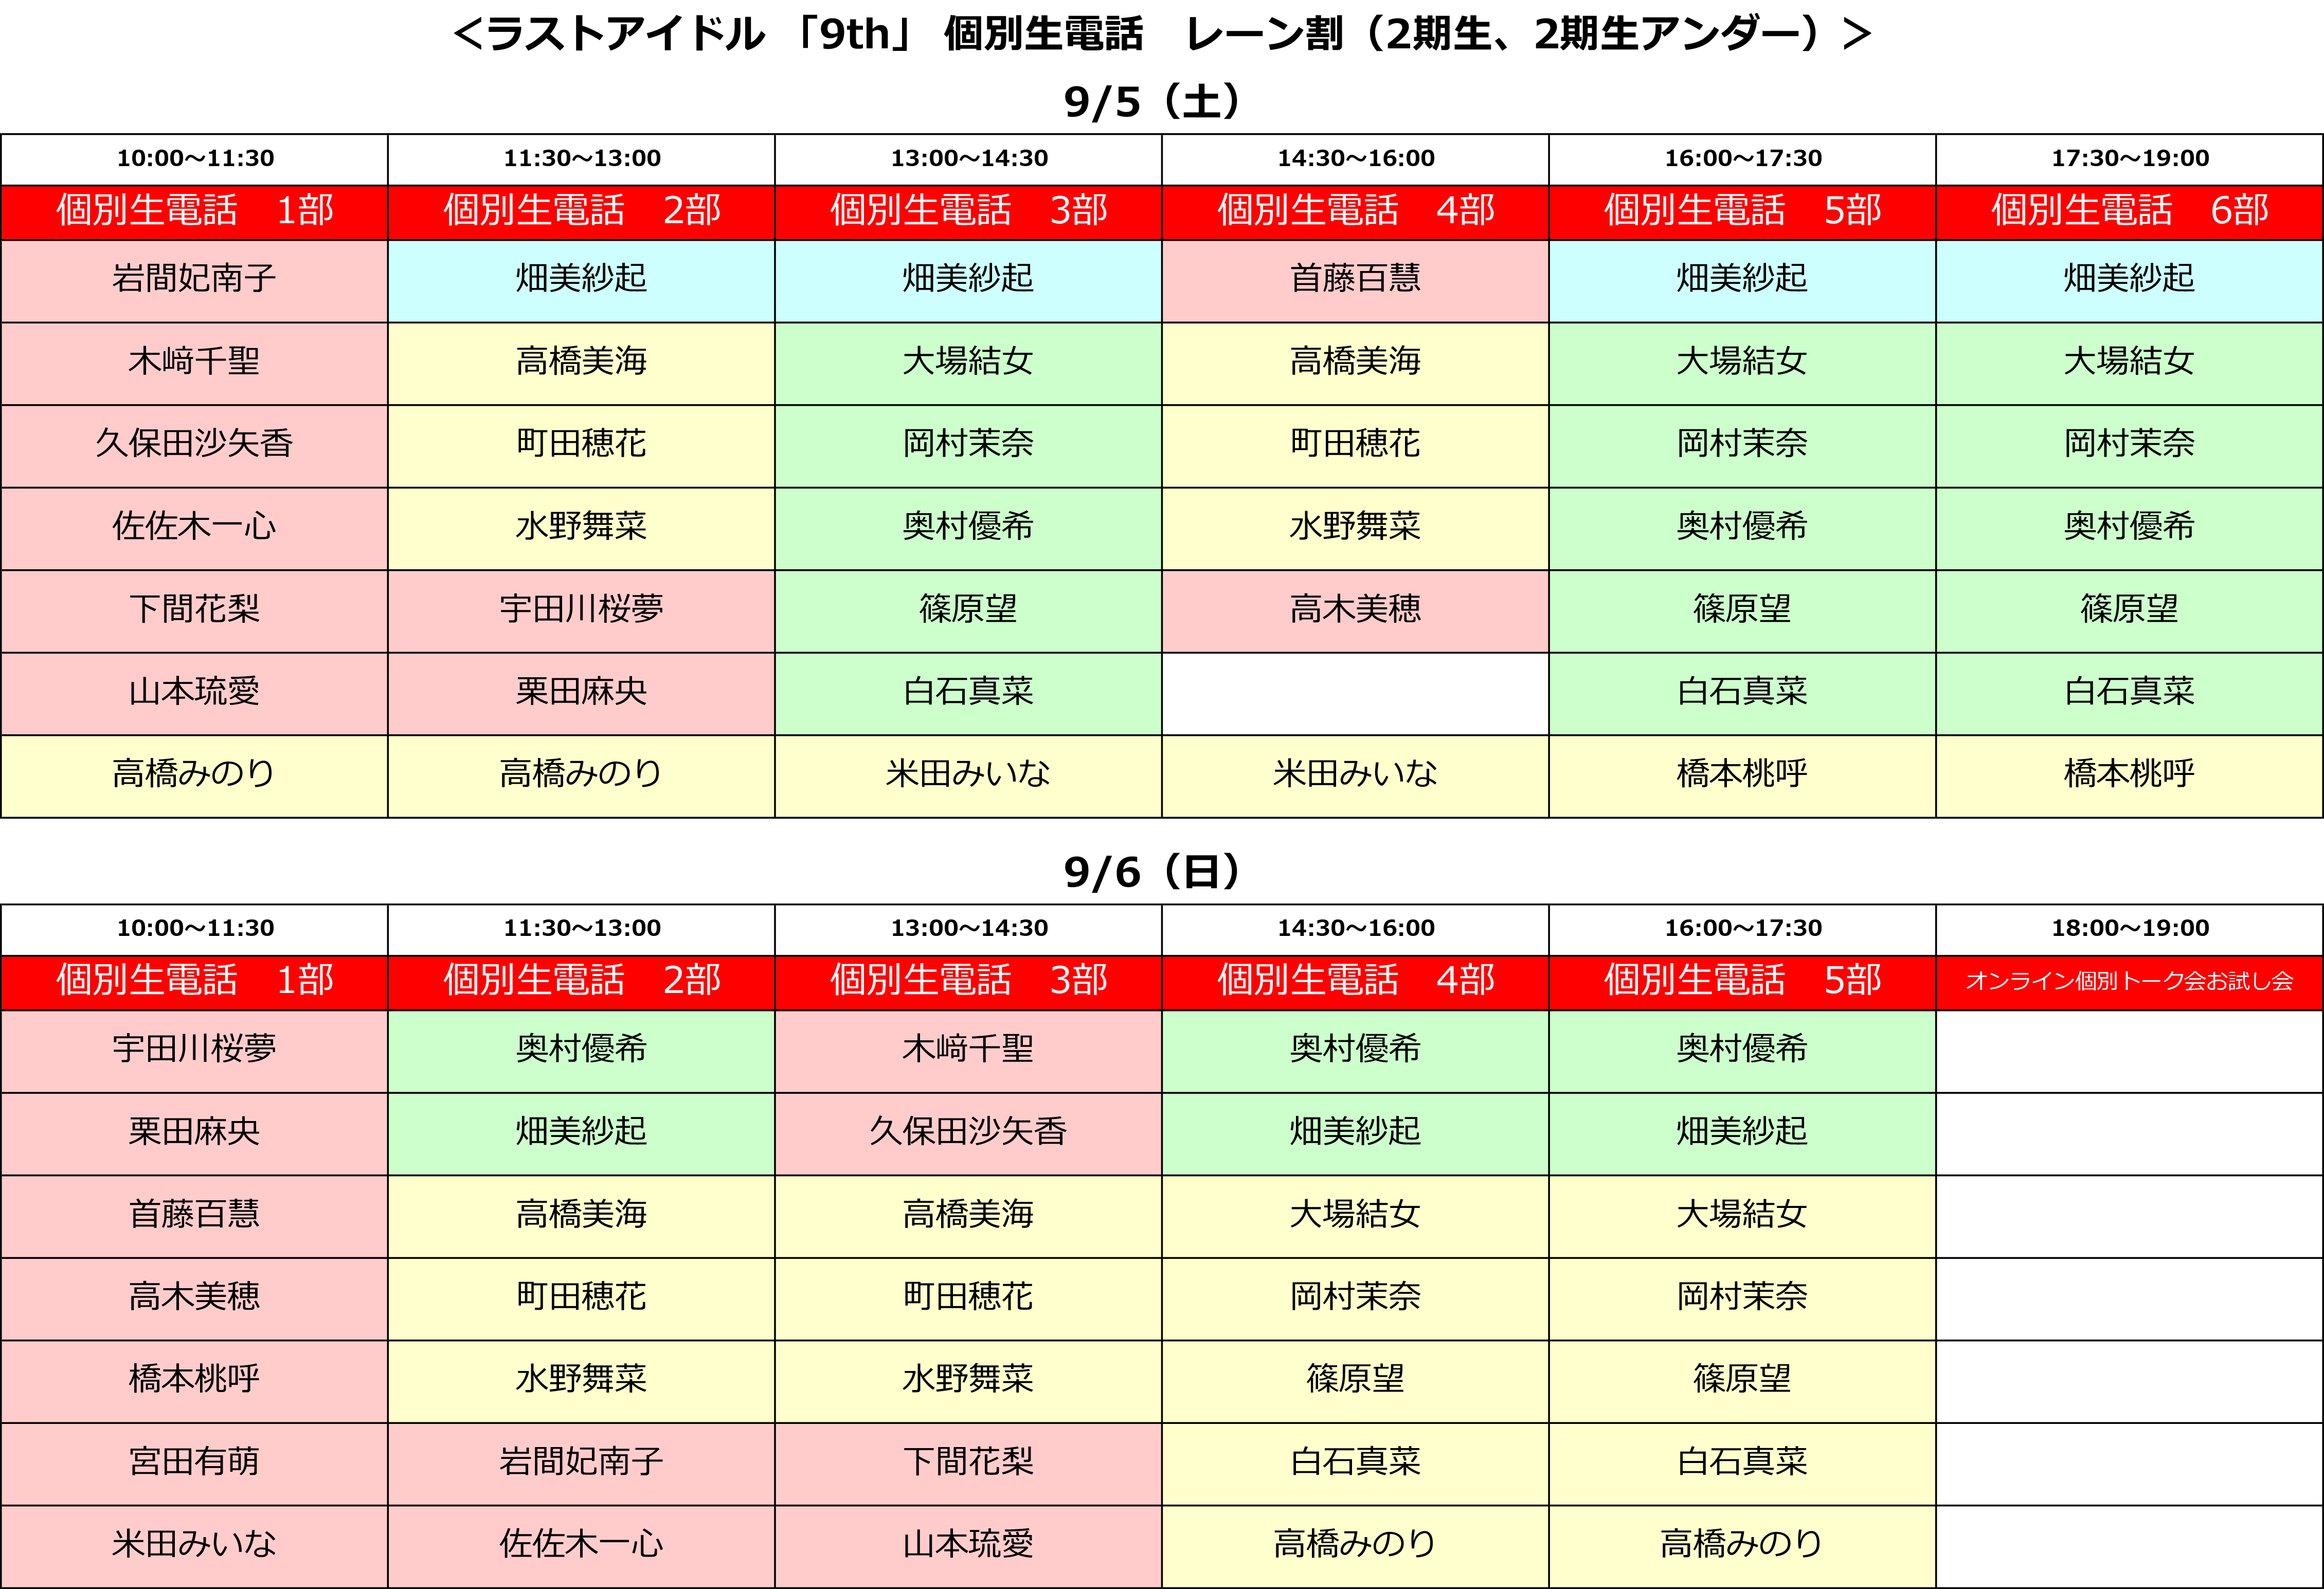 ラストアイドル 11 4発売9thシングルweb盤イベント 個別生電話 開催のお知らせ ラストアイドル